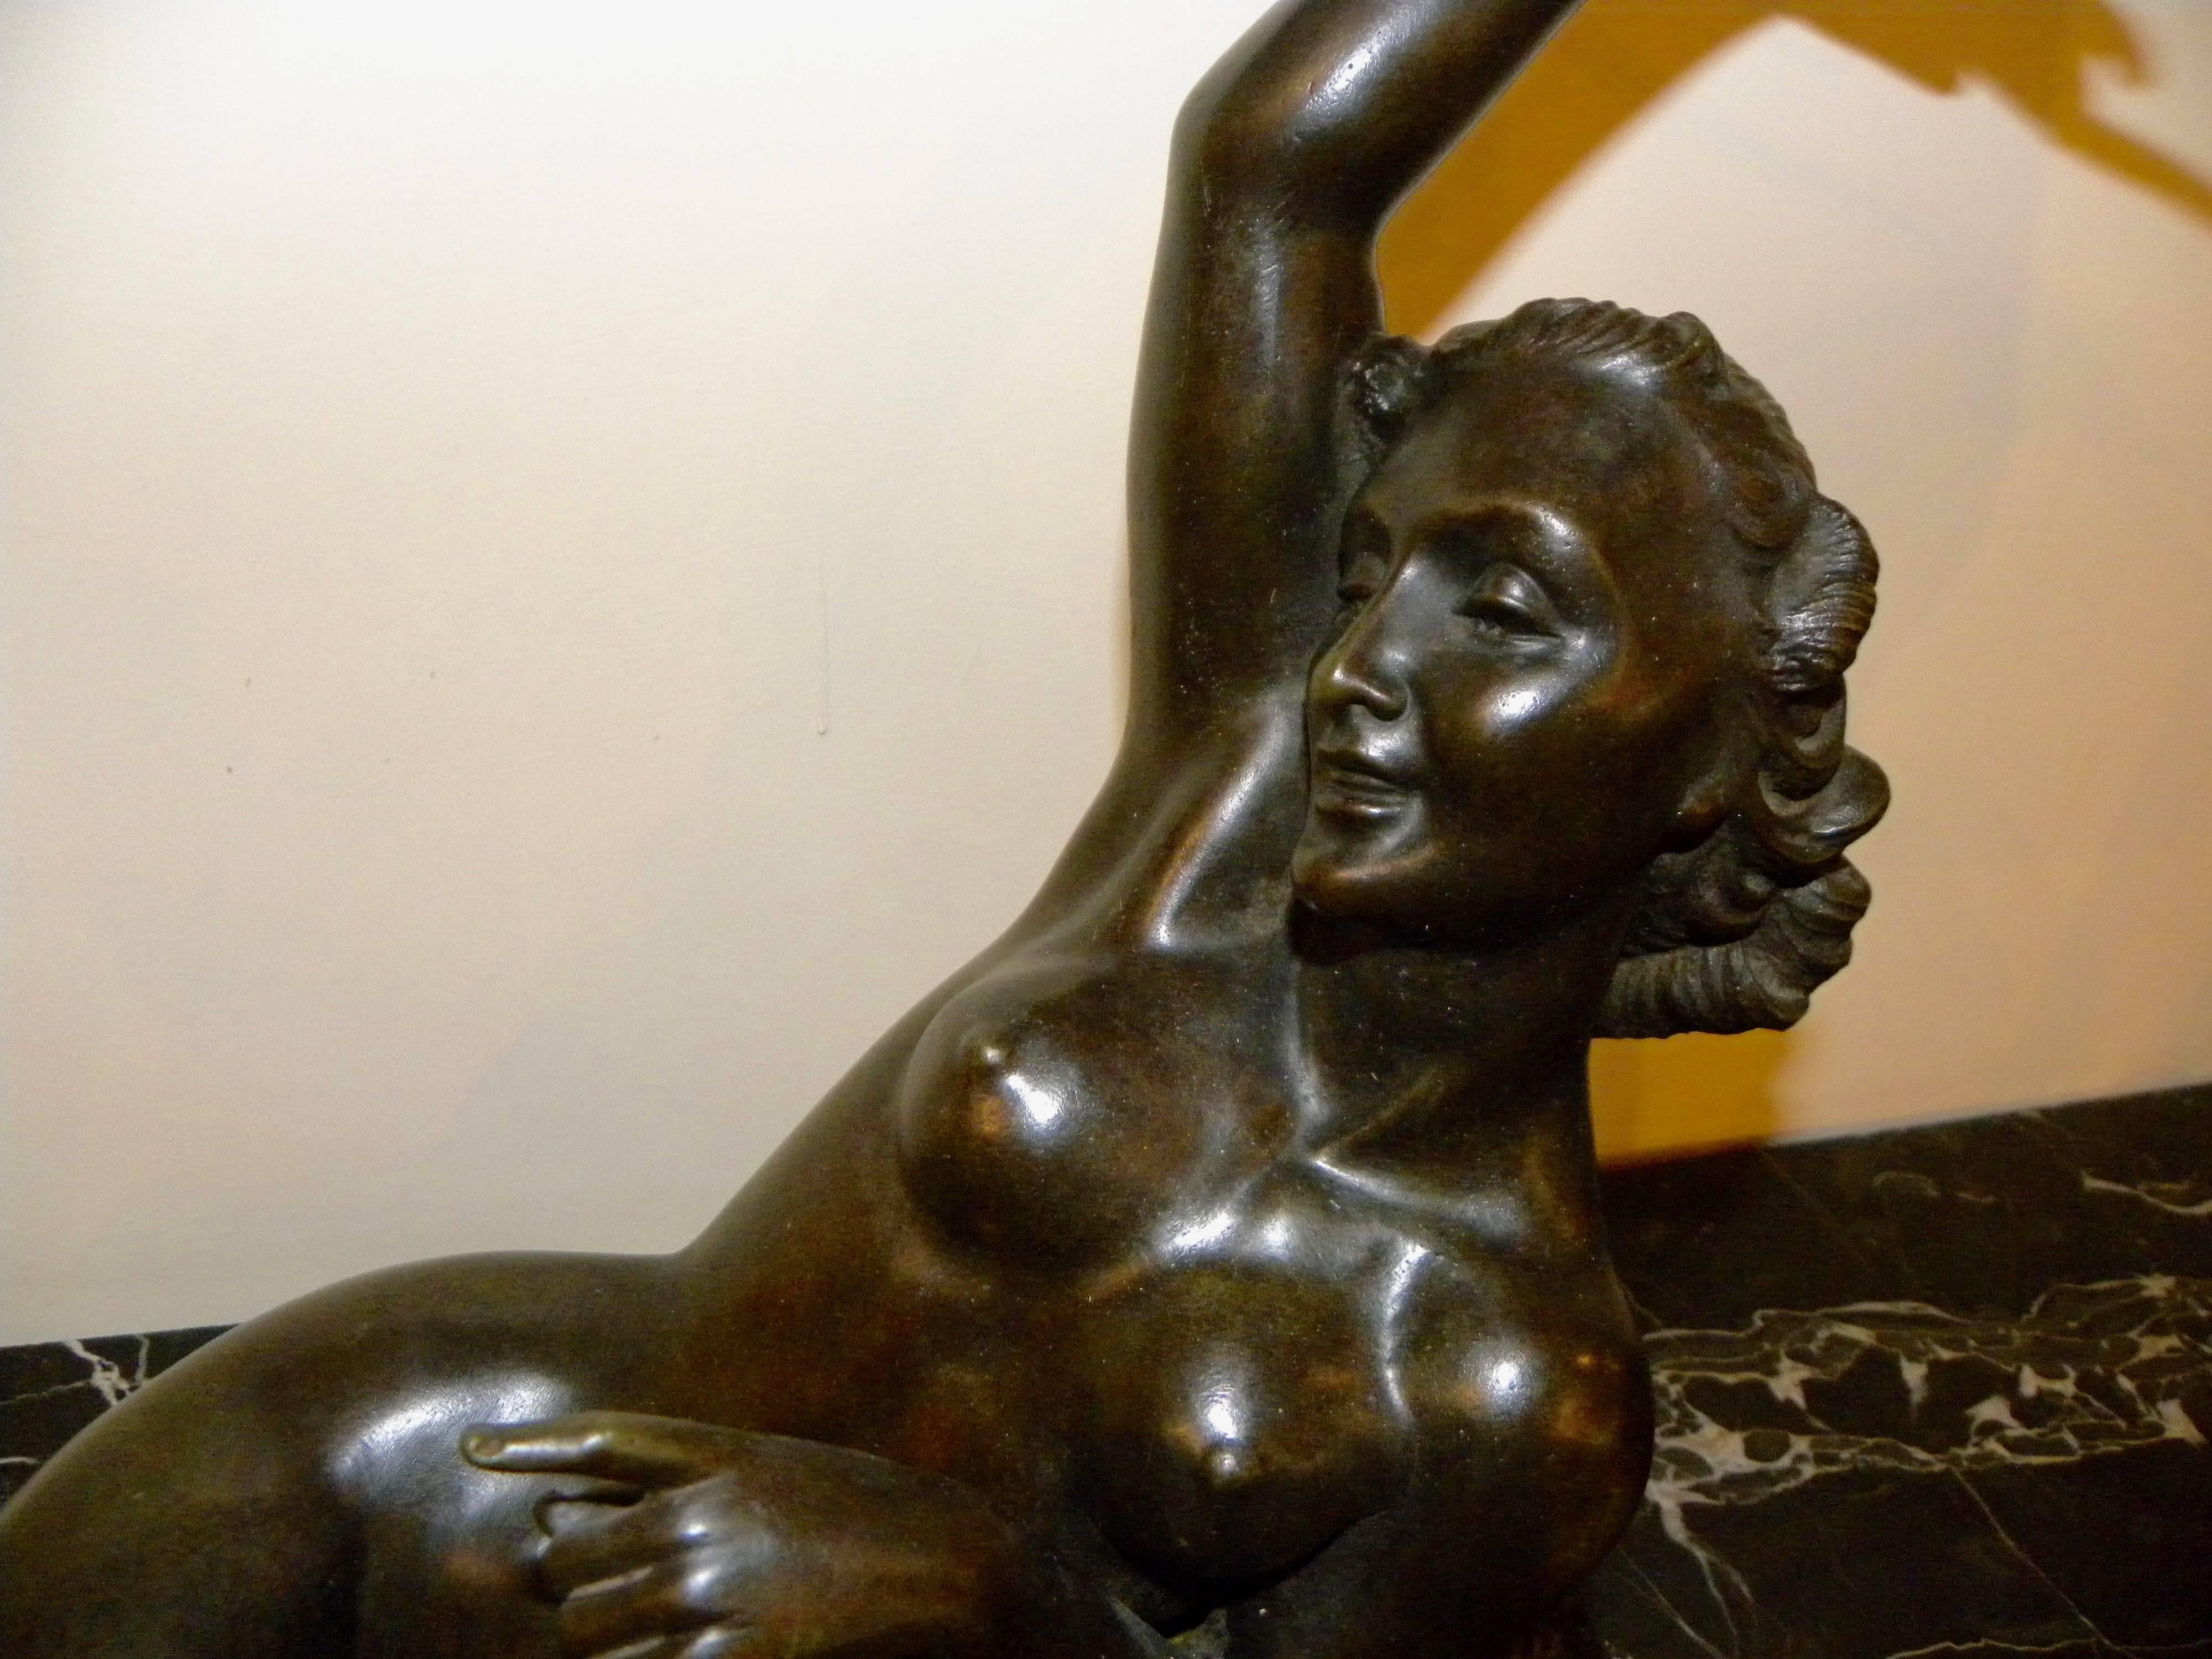 Sculpture en bronze de Salvatore Melani, de style Art déco, représentant un nu allongé, créée à la fin de sa carrière qui a commencé au début des années 1920 et s'est achevée en 1934, à l'âge de 32 ans. La pose sereine et sensuelle est définie par